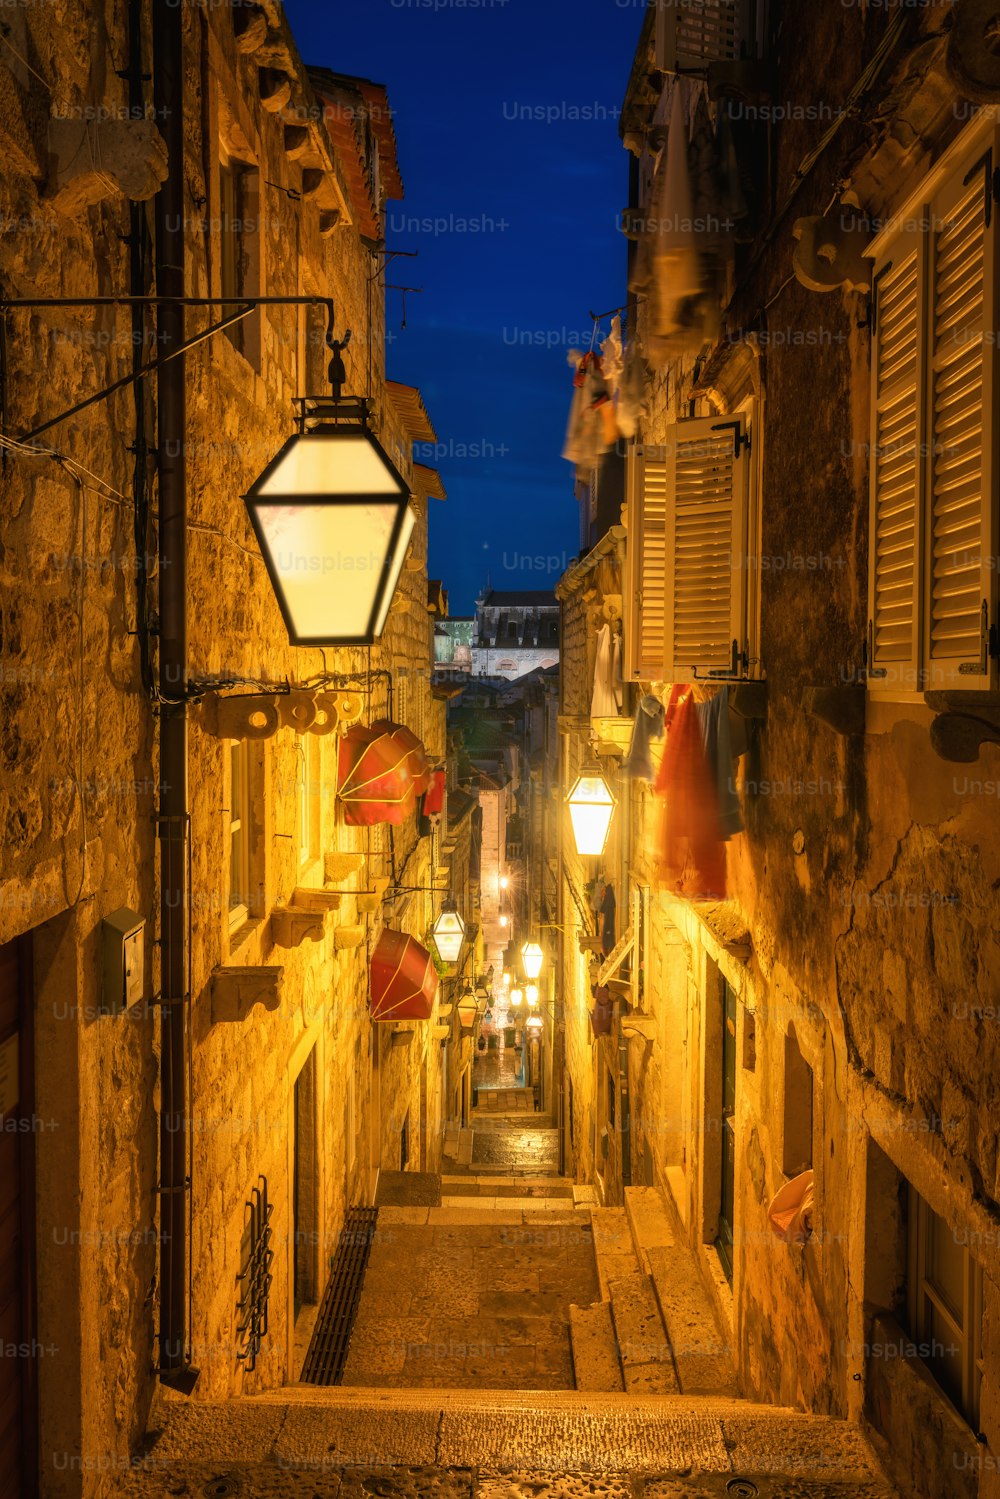 Famoso vicolo stretto del centro storico di Dubrovnik in Croazia di notte - Destinazione turistica di spicco della Croazia. Il centro storico di Dubrovnik è stato dichiarato Patrimonio dell'Umanità dall'UNESCO nel 1979.